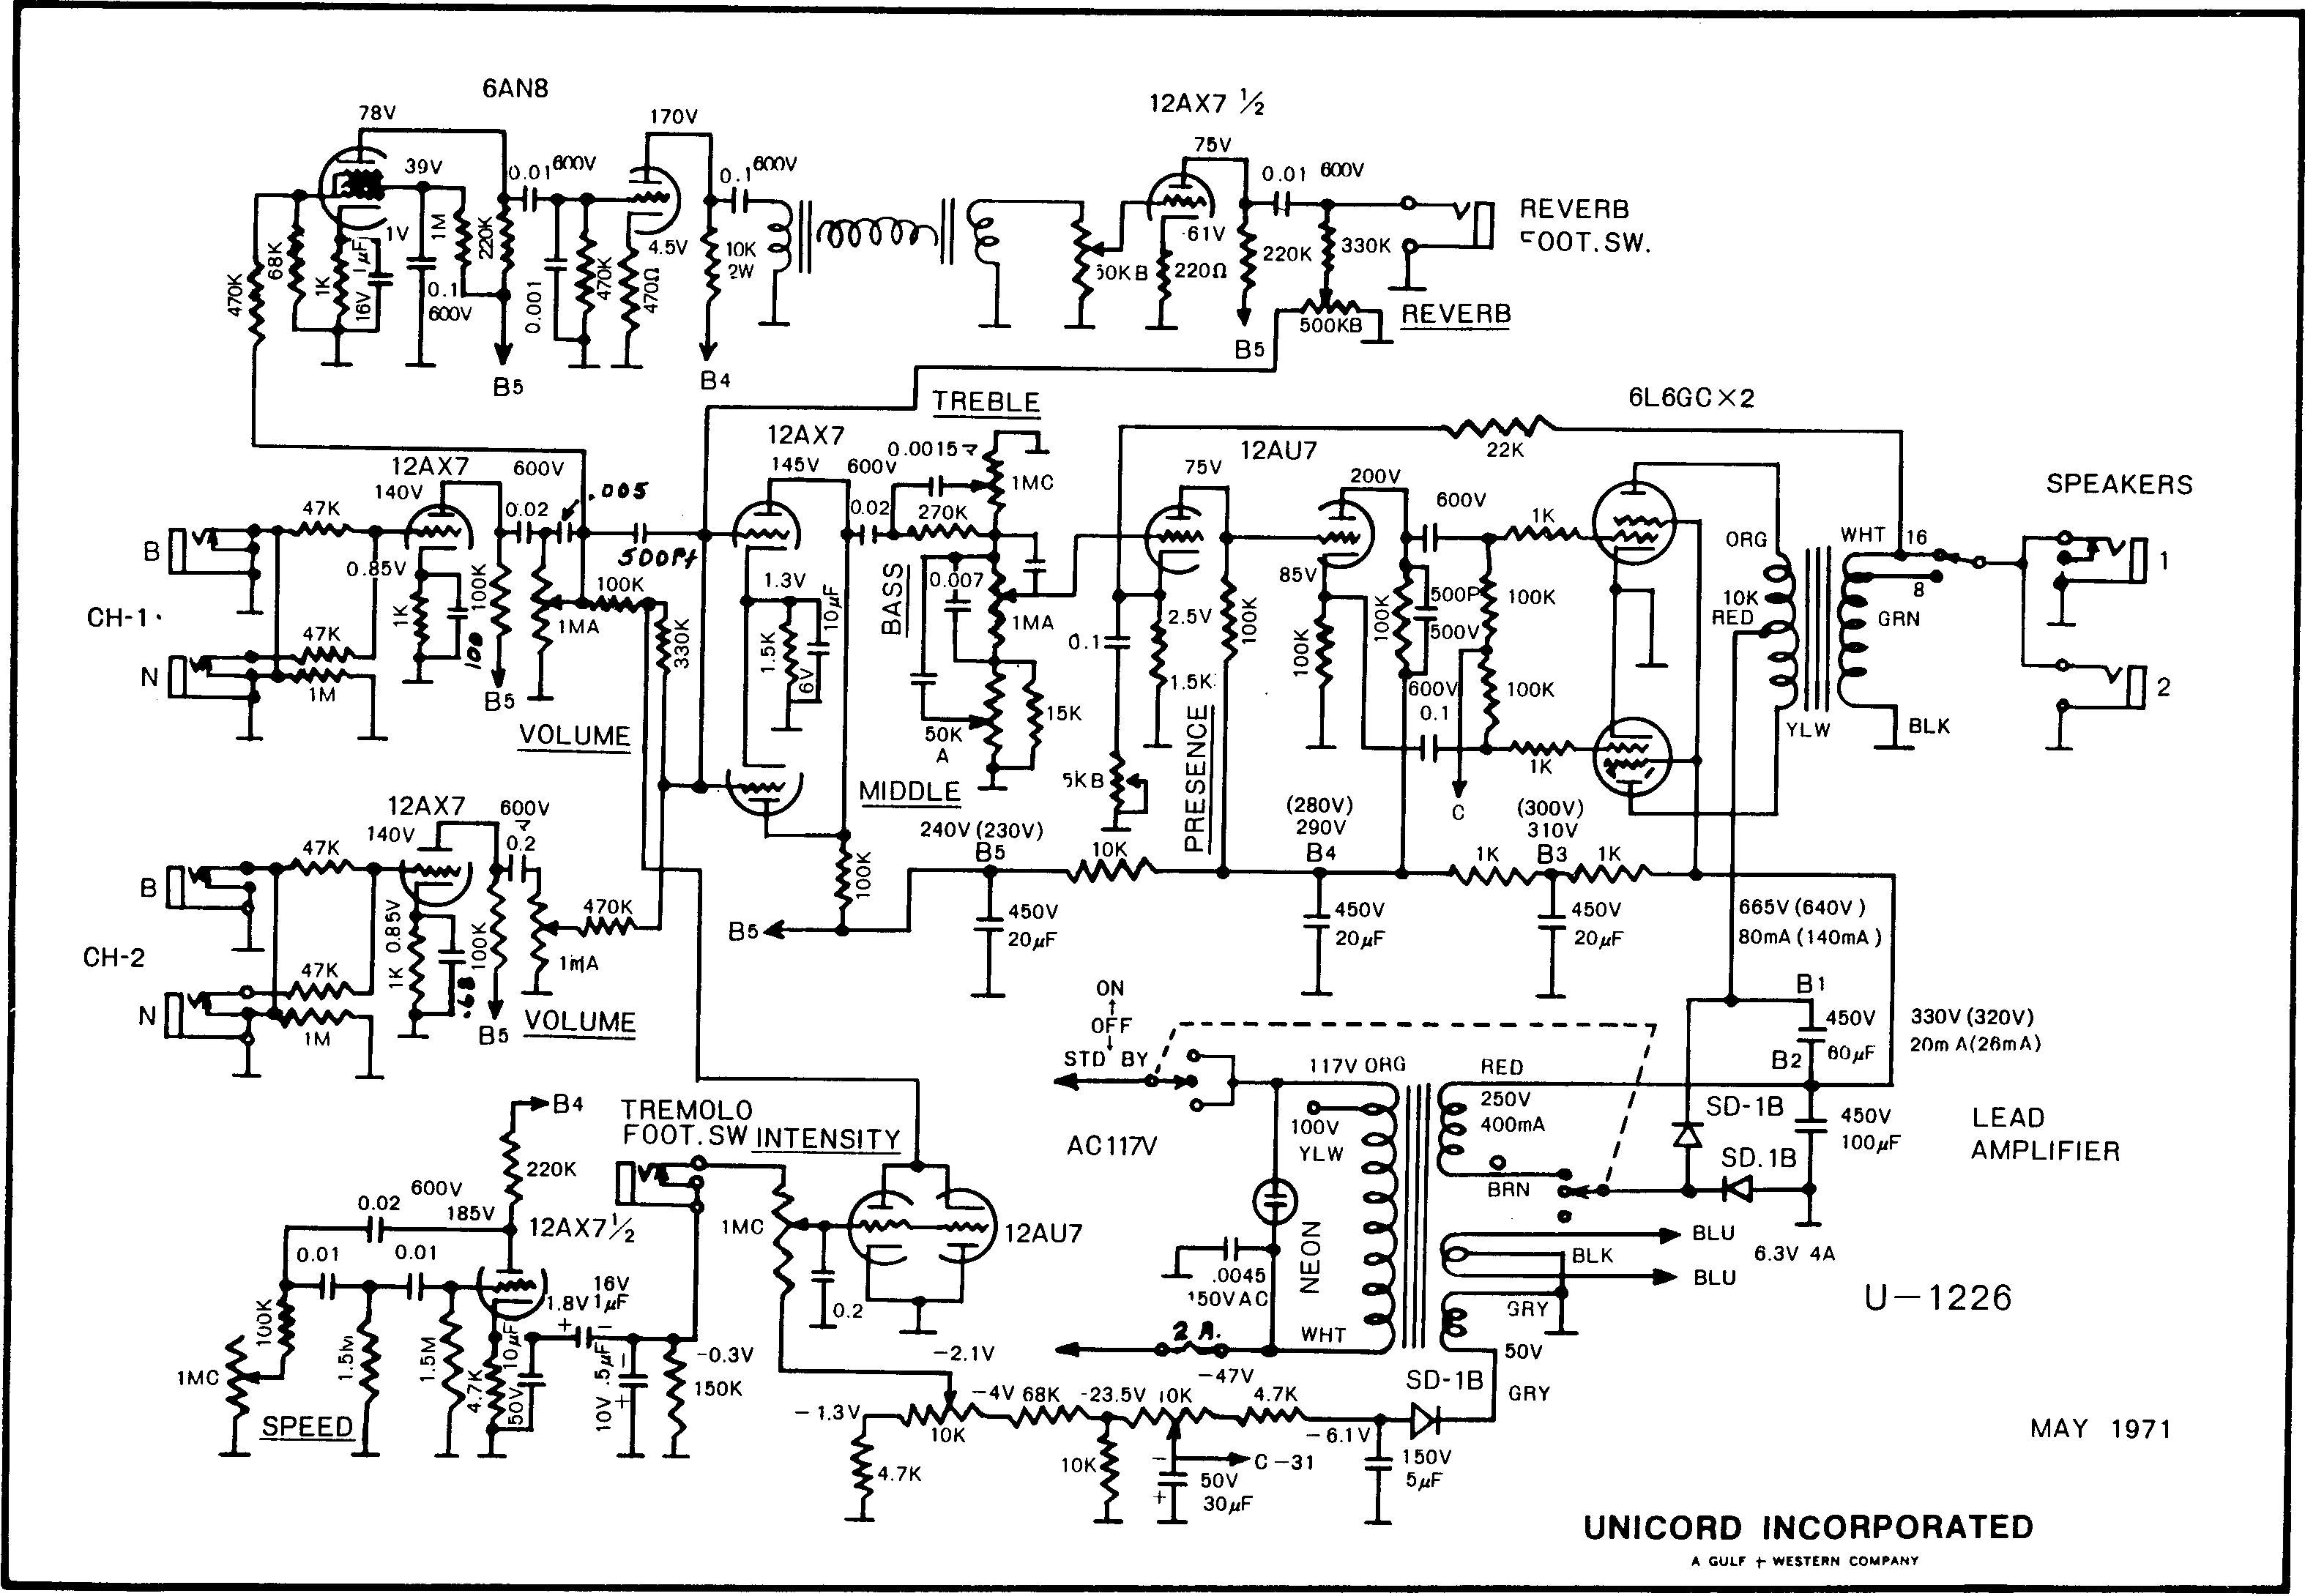 Схема Unicord - U1226 Lead Amplifier (1971)